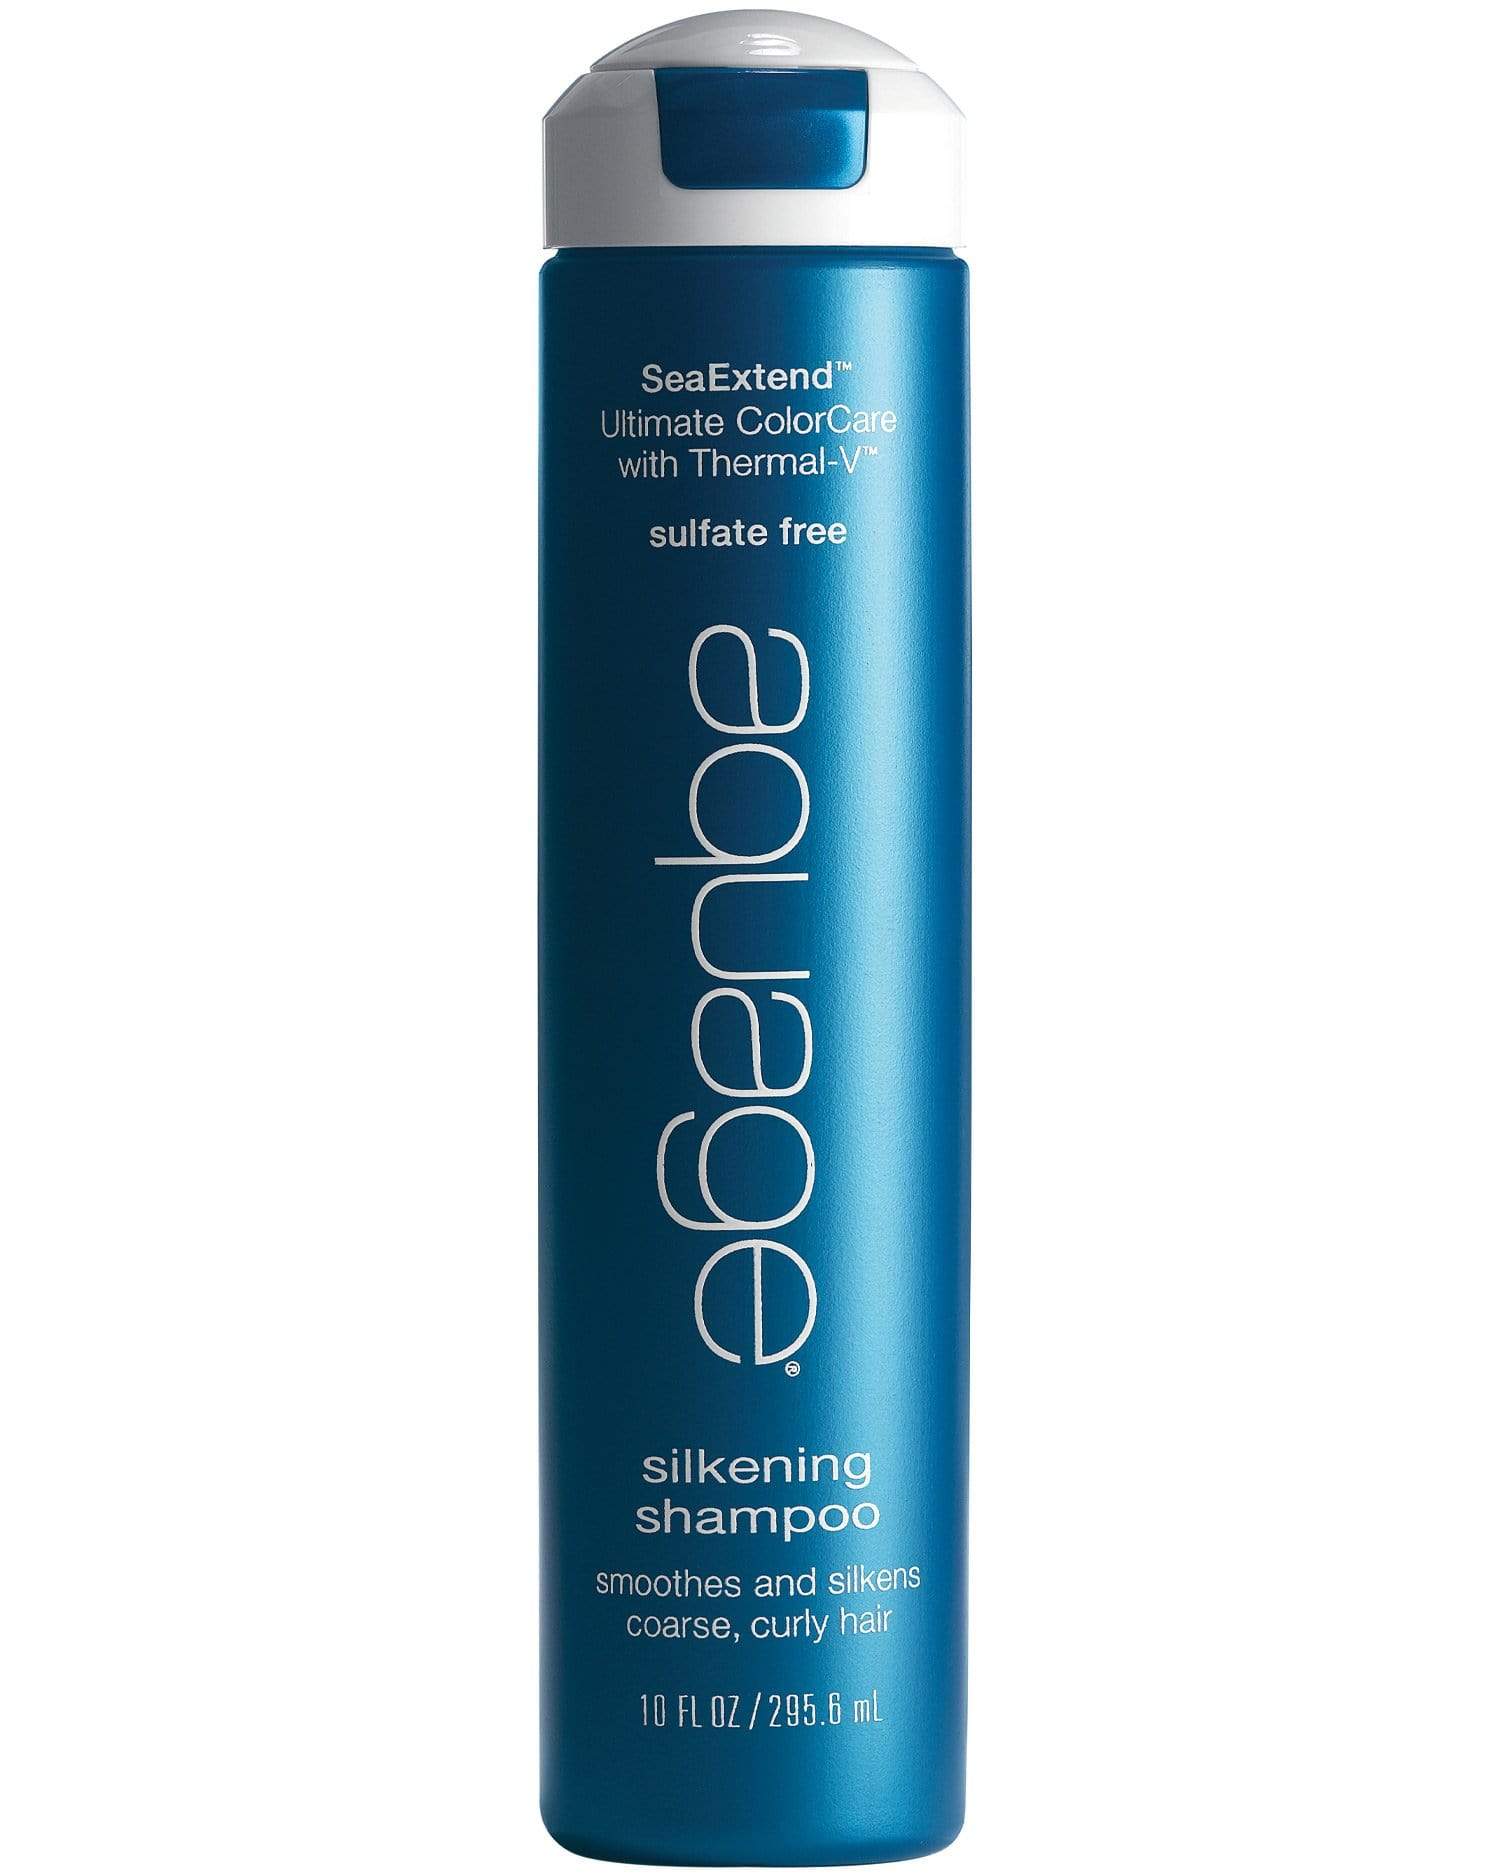 SeaExtend Shampoo Aquage Hair